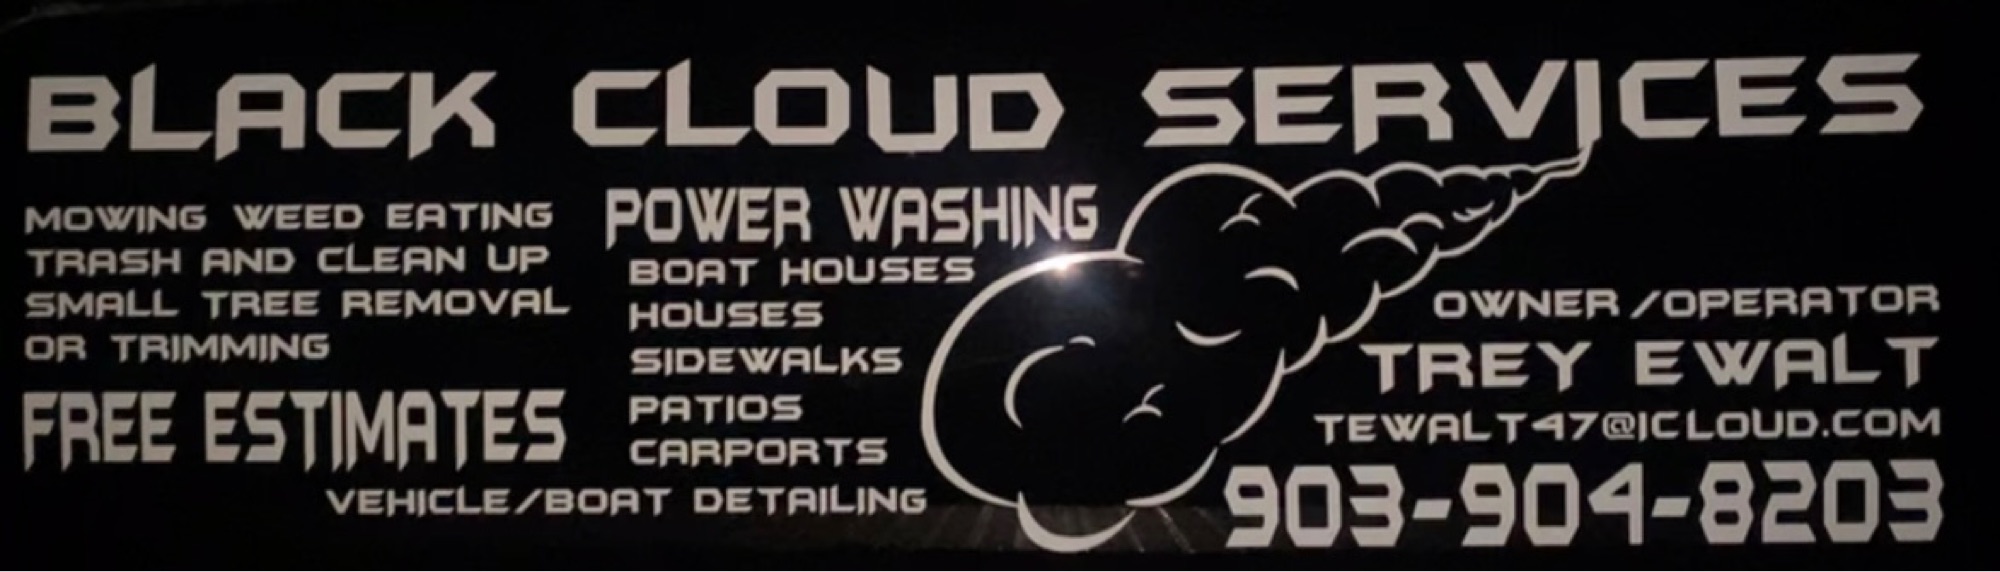 Black Cloud Services Logo